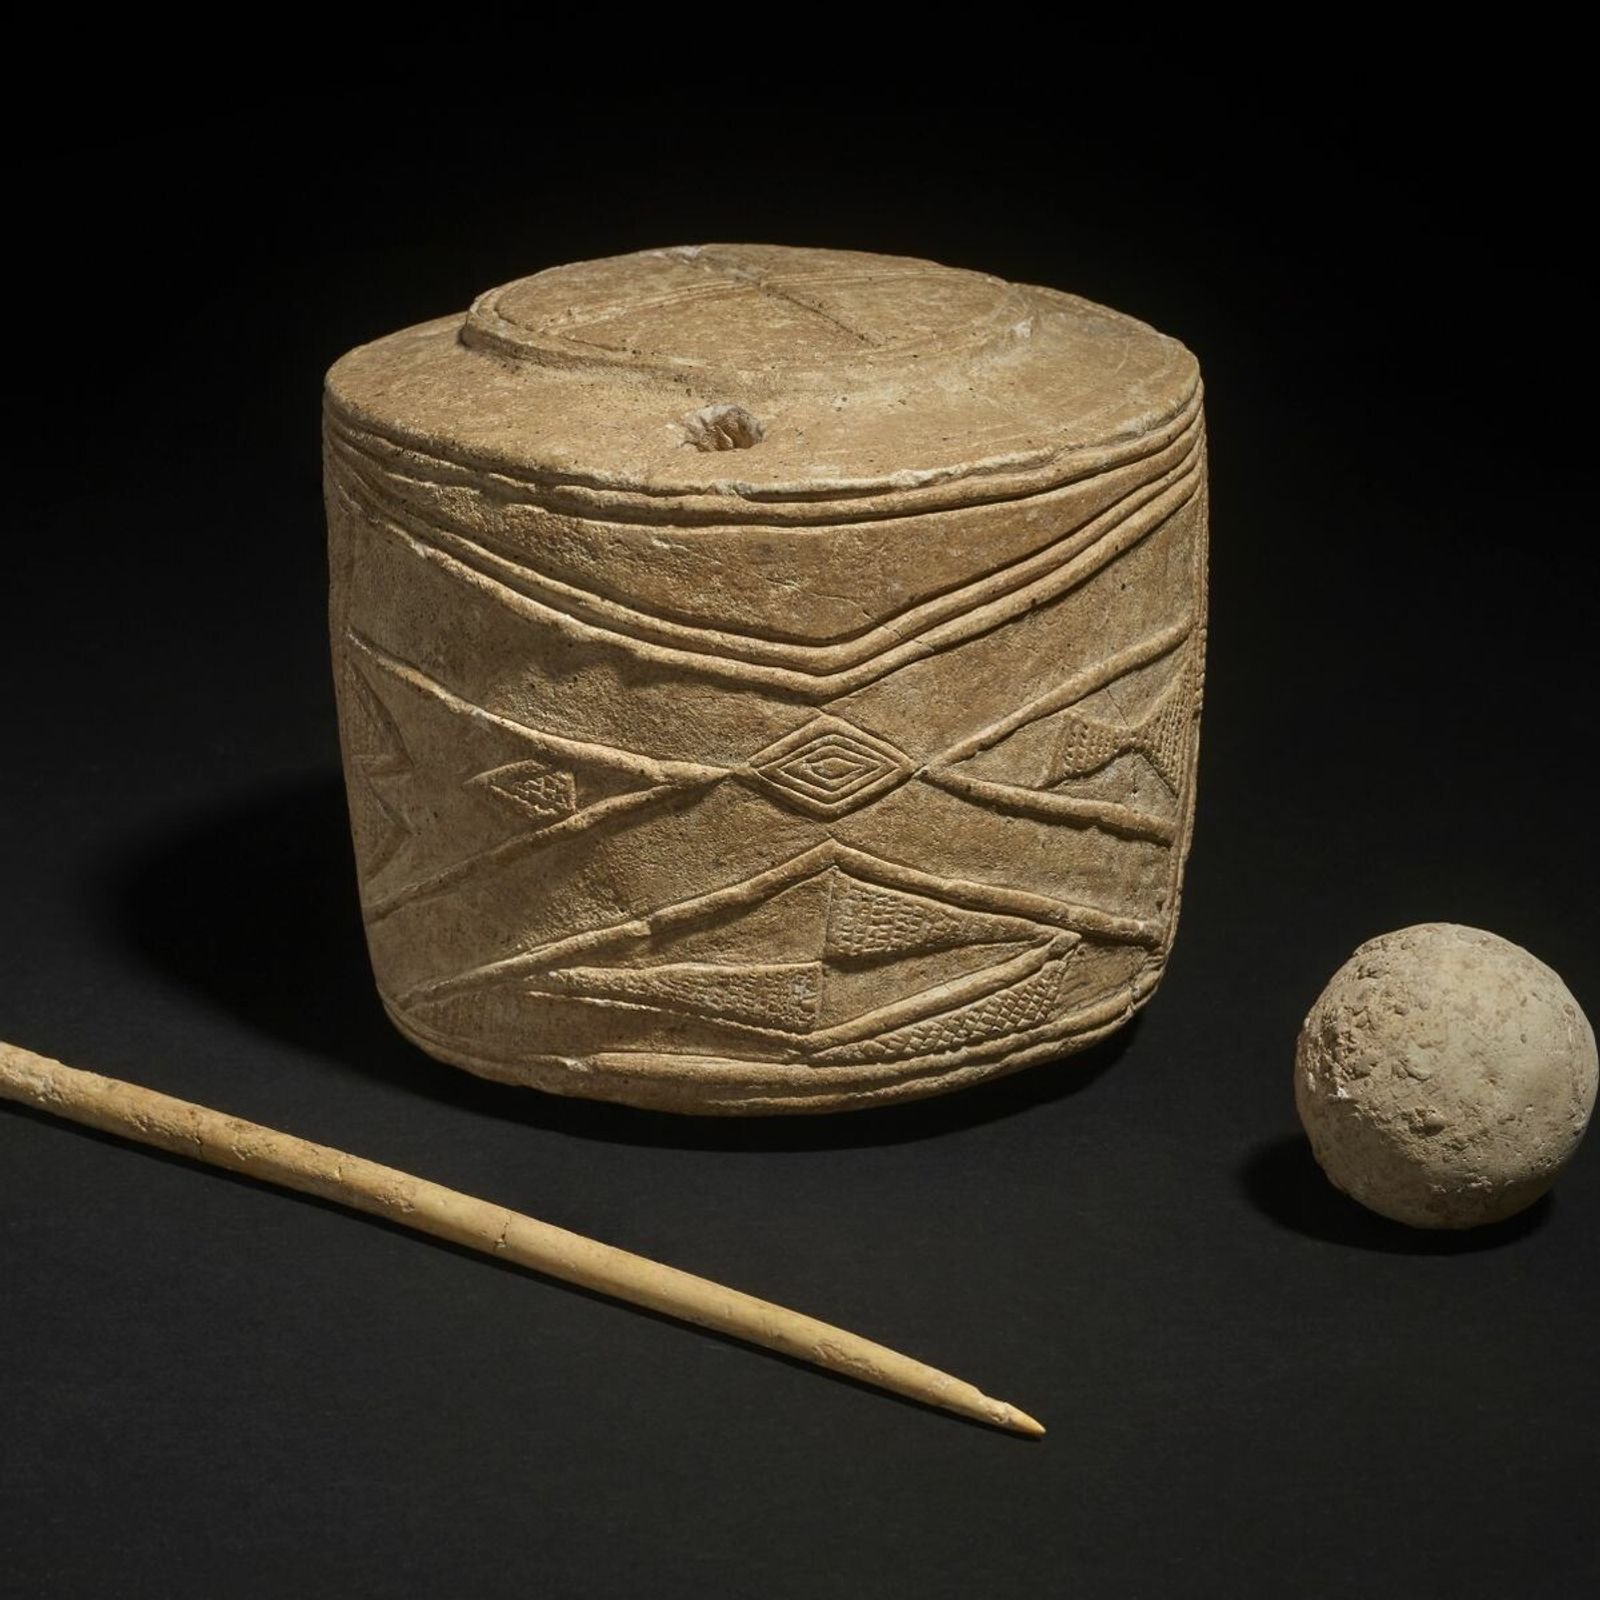 Trommel in Kindergrab: Prähistorisches Artefakt aus der Zeit von Stonehenge